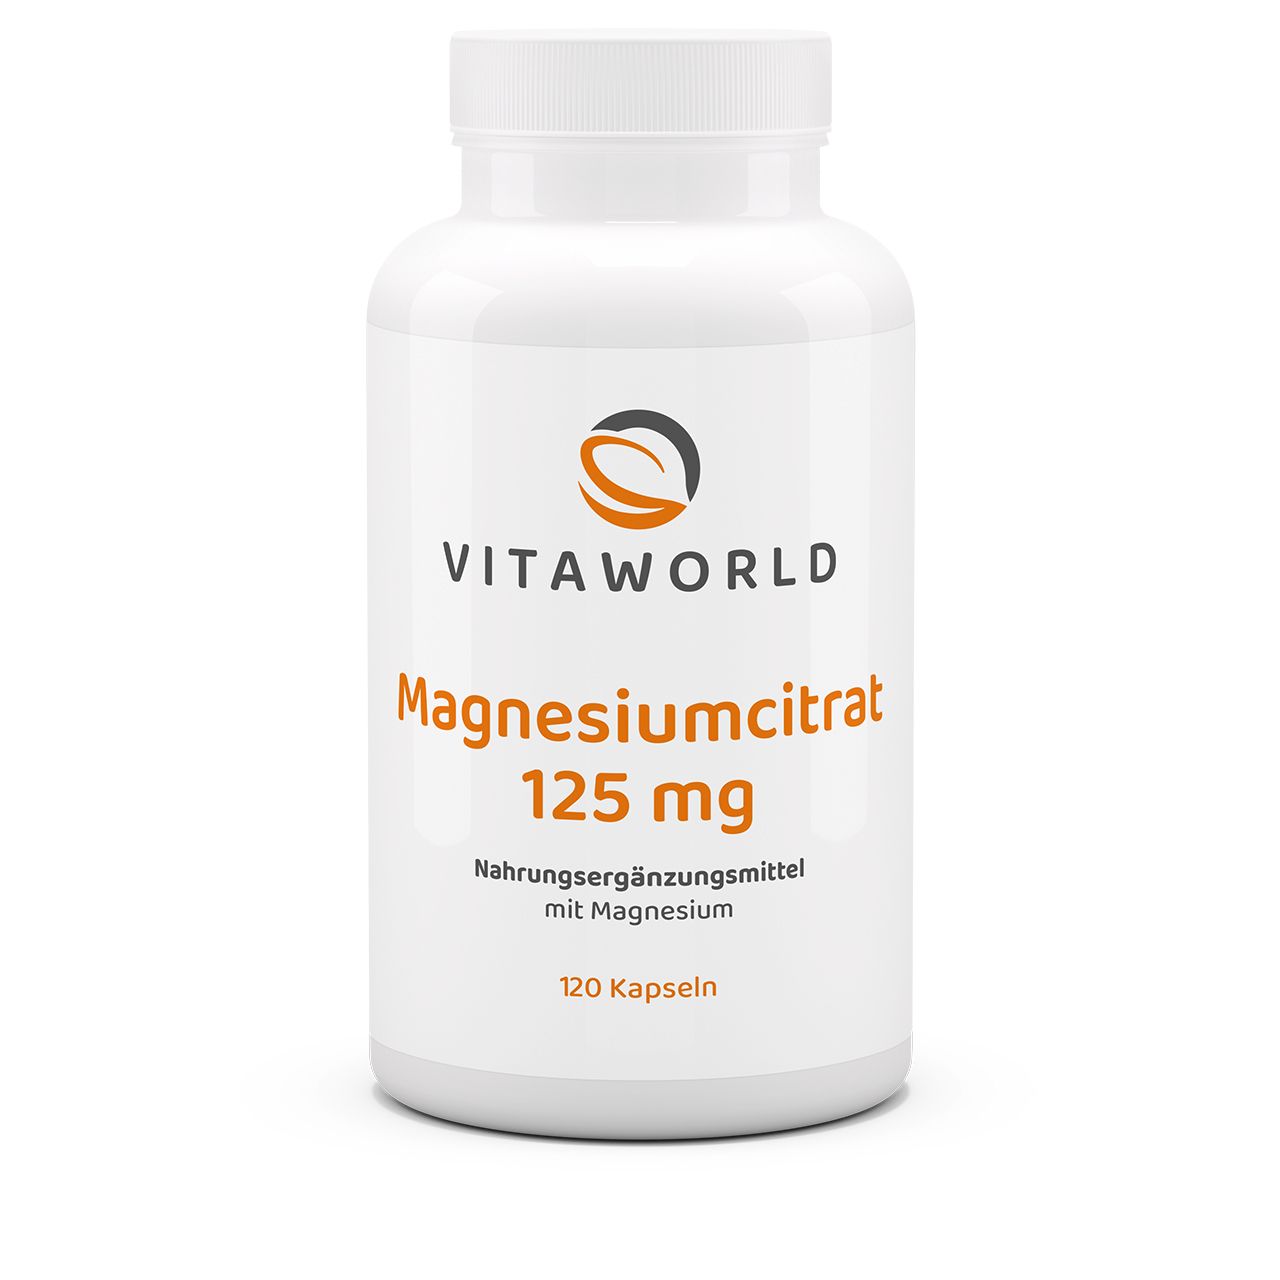 Vitaworld Magnesiumcitrat 125 mg | 120 Kapseln | vegan | gluten- und laktosefrei